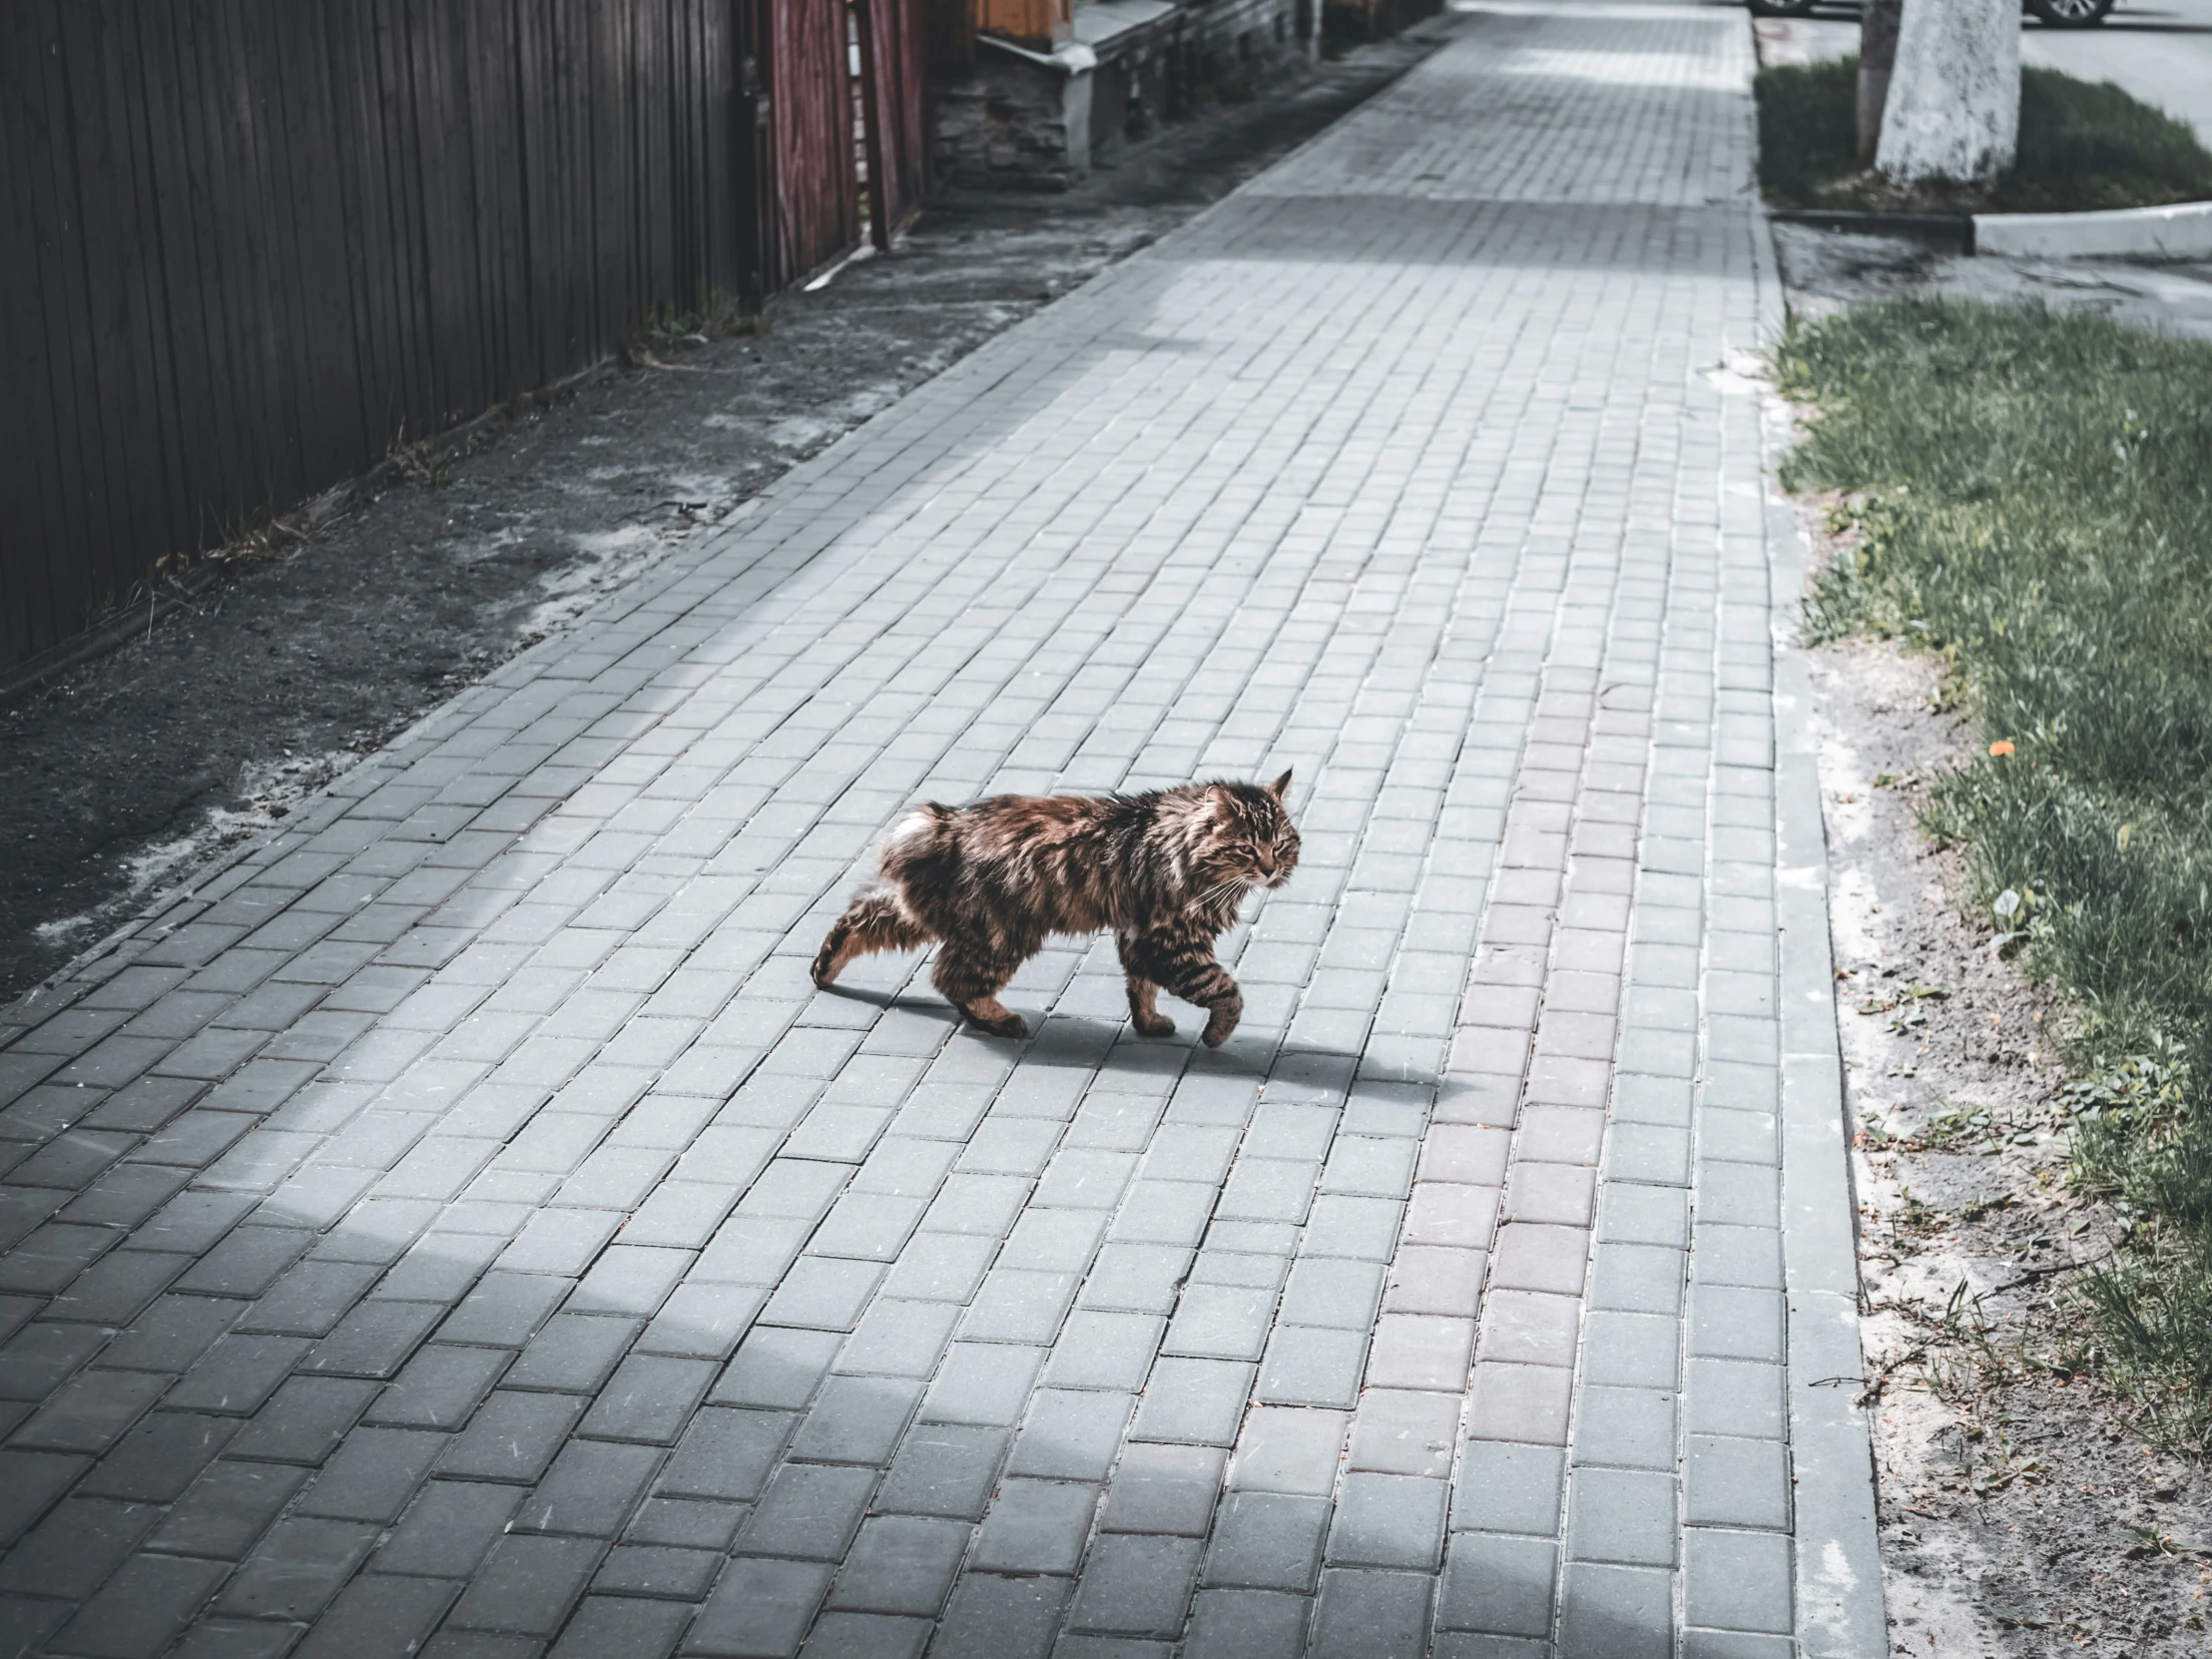 a cat walking down a brick walk way